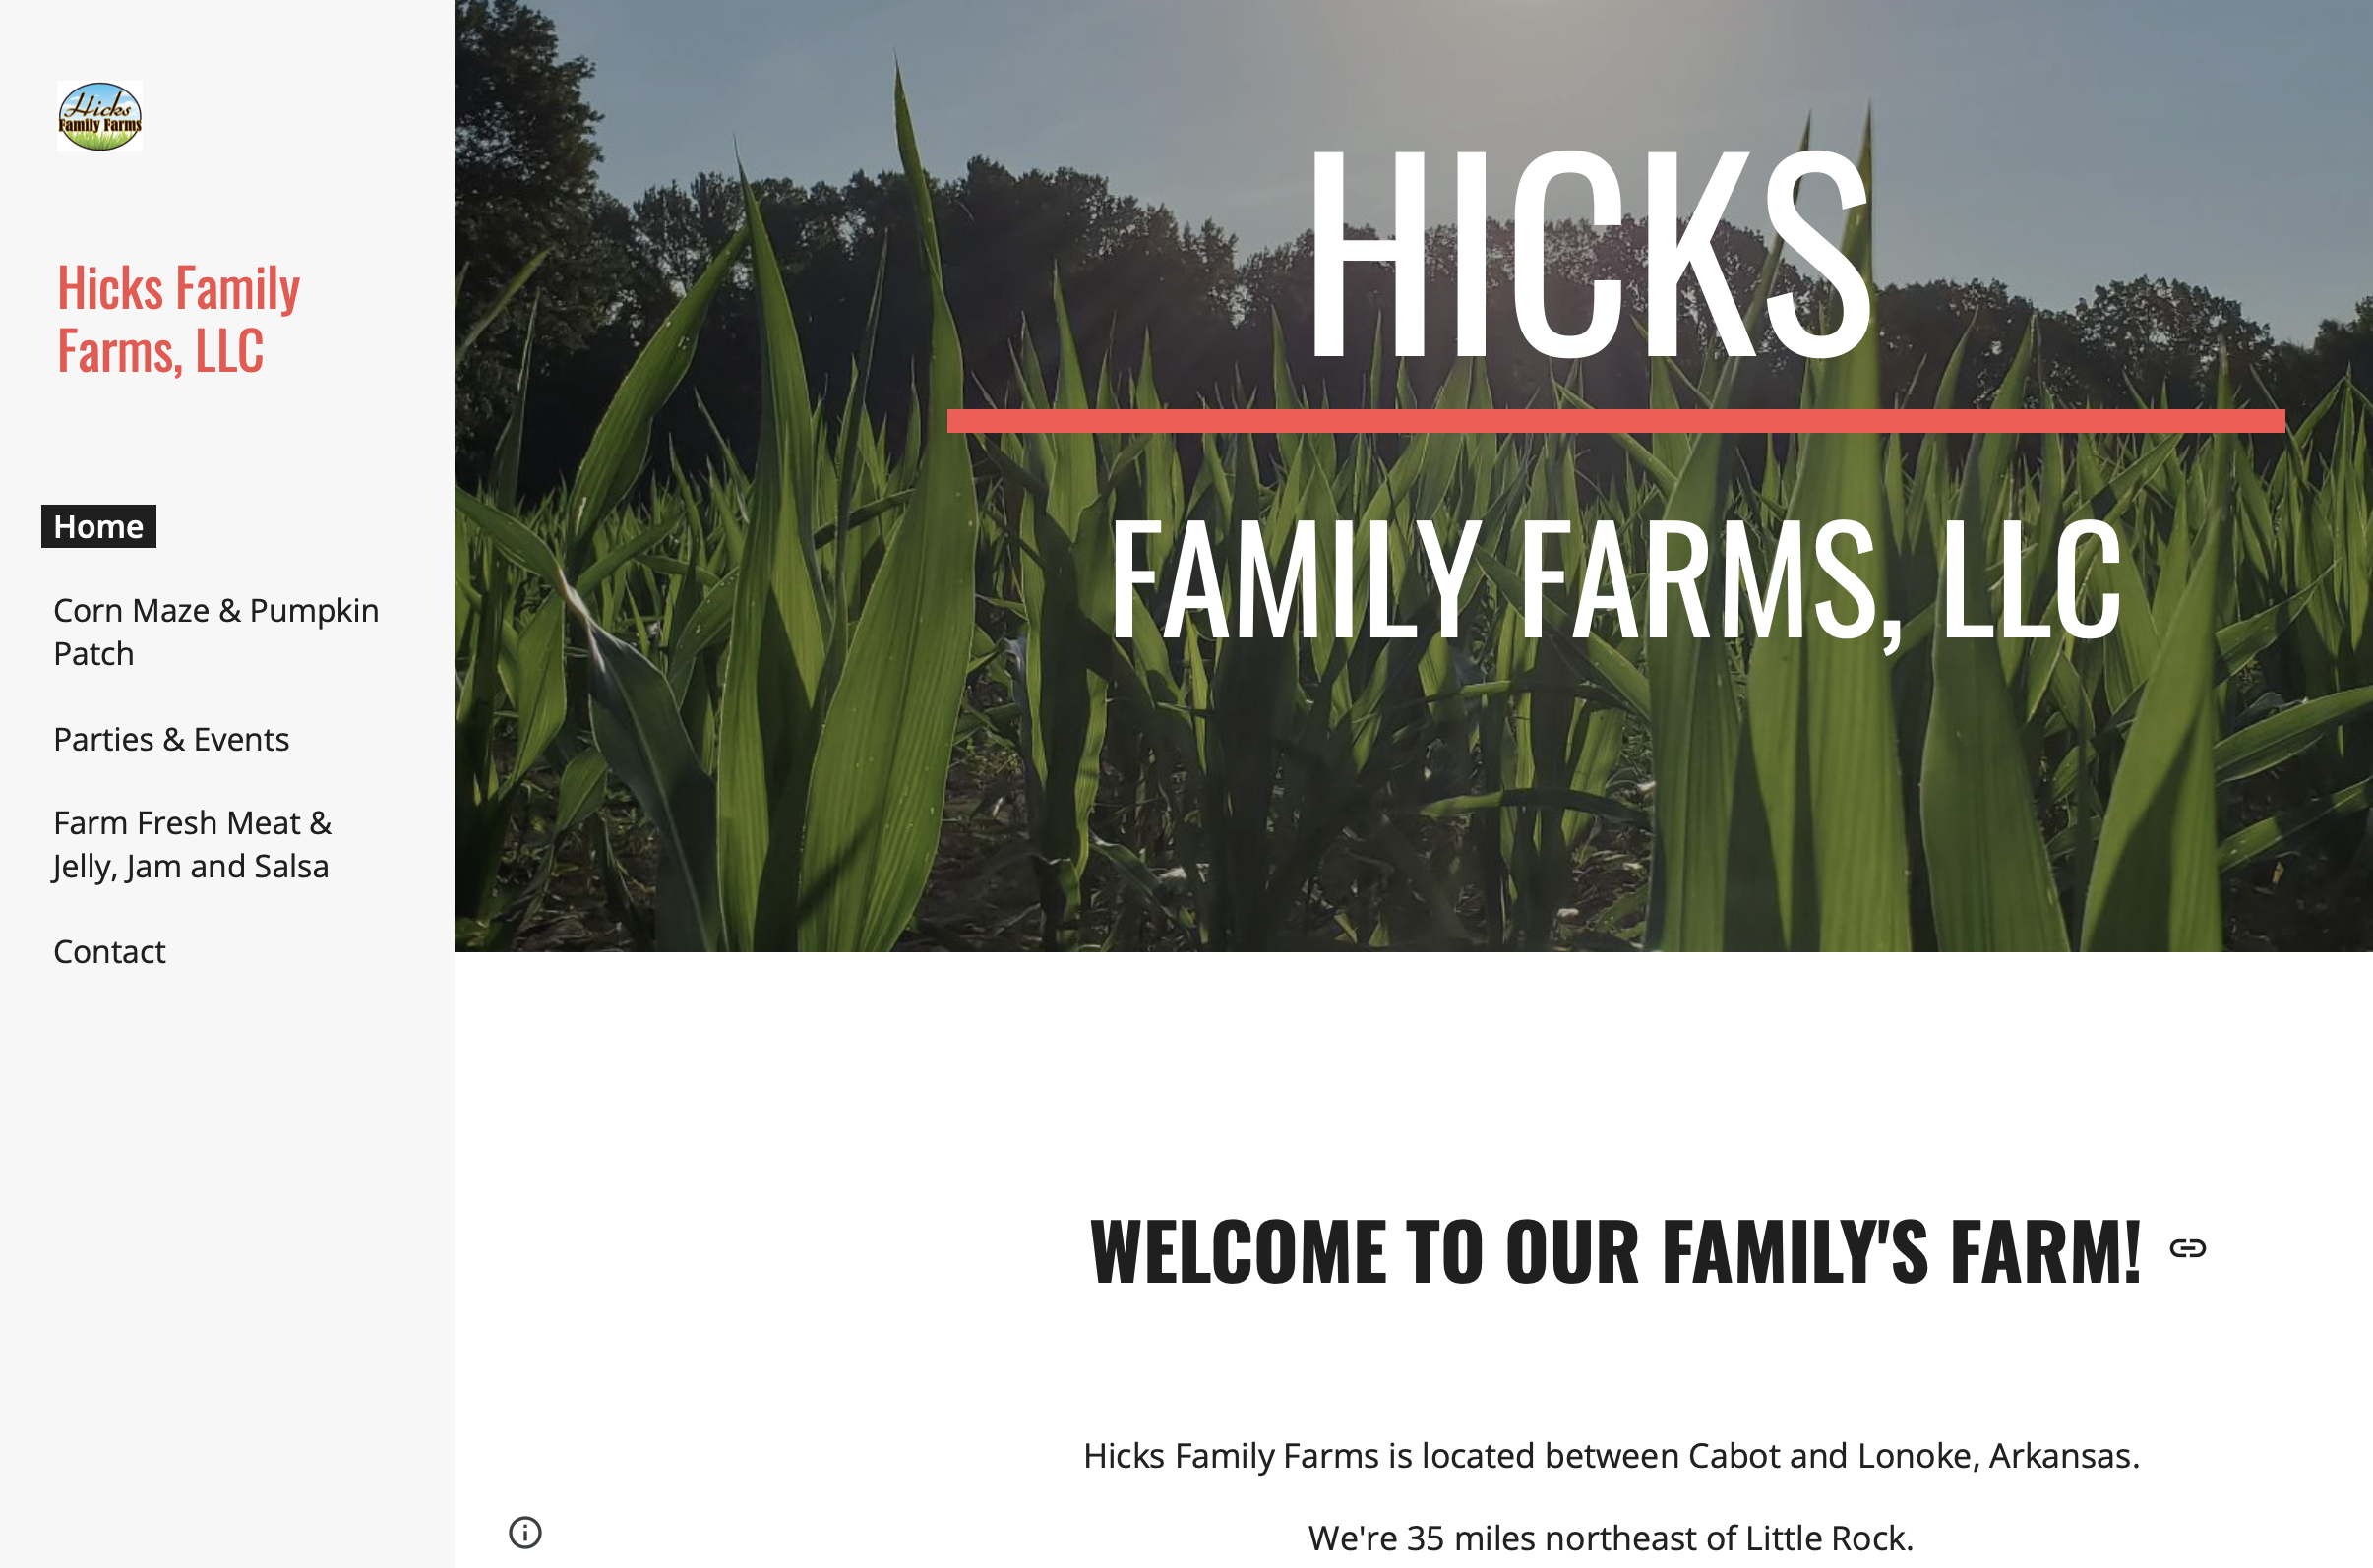 Hicks Family Farm